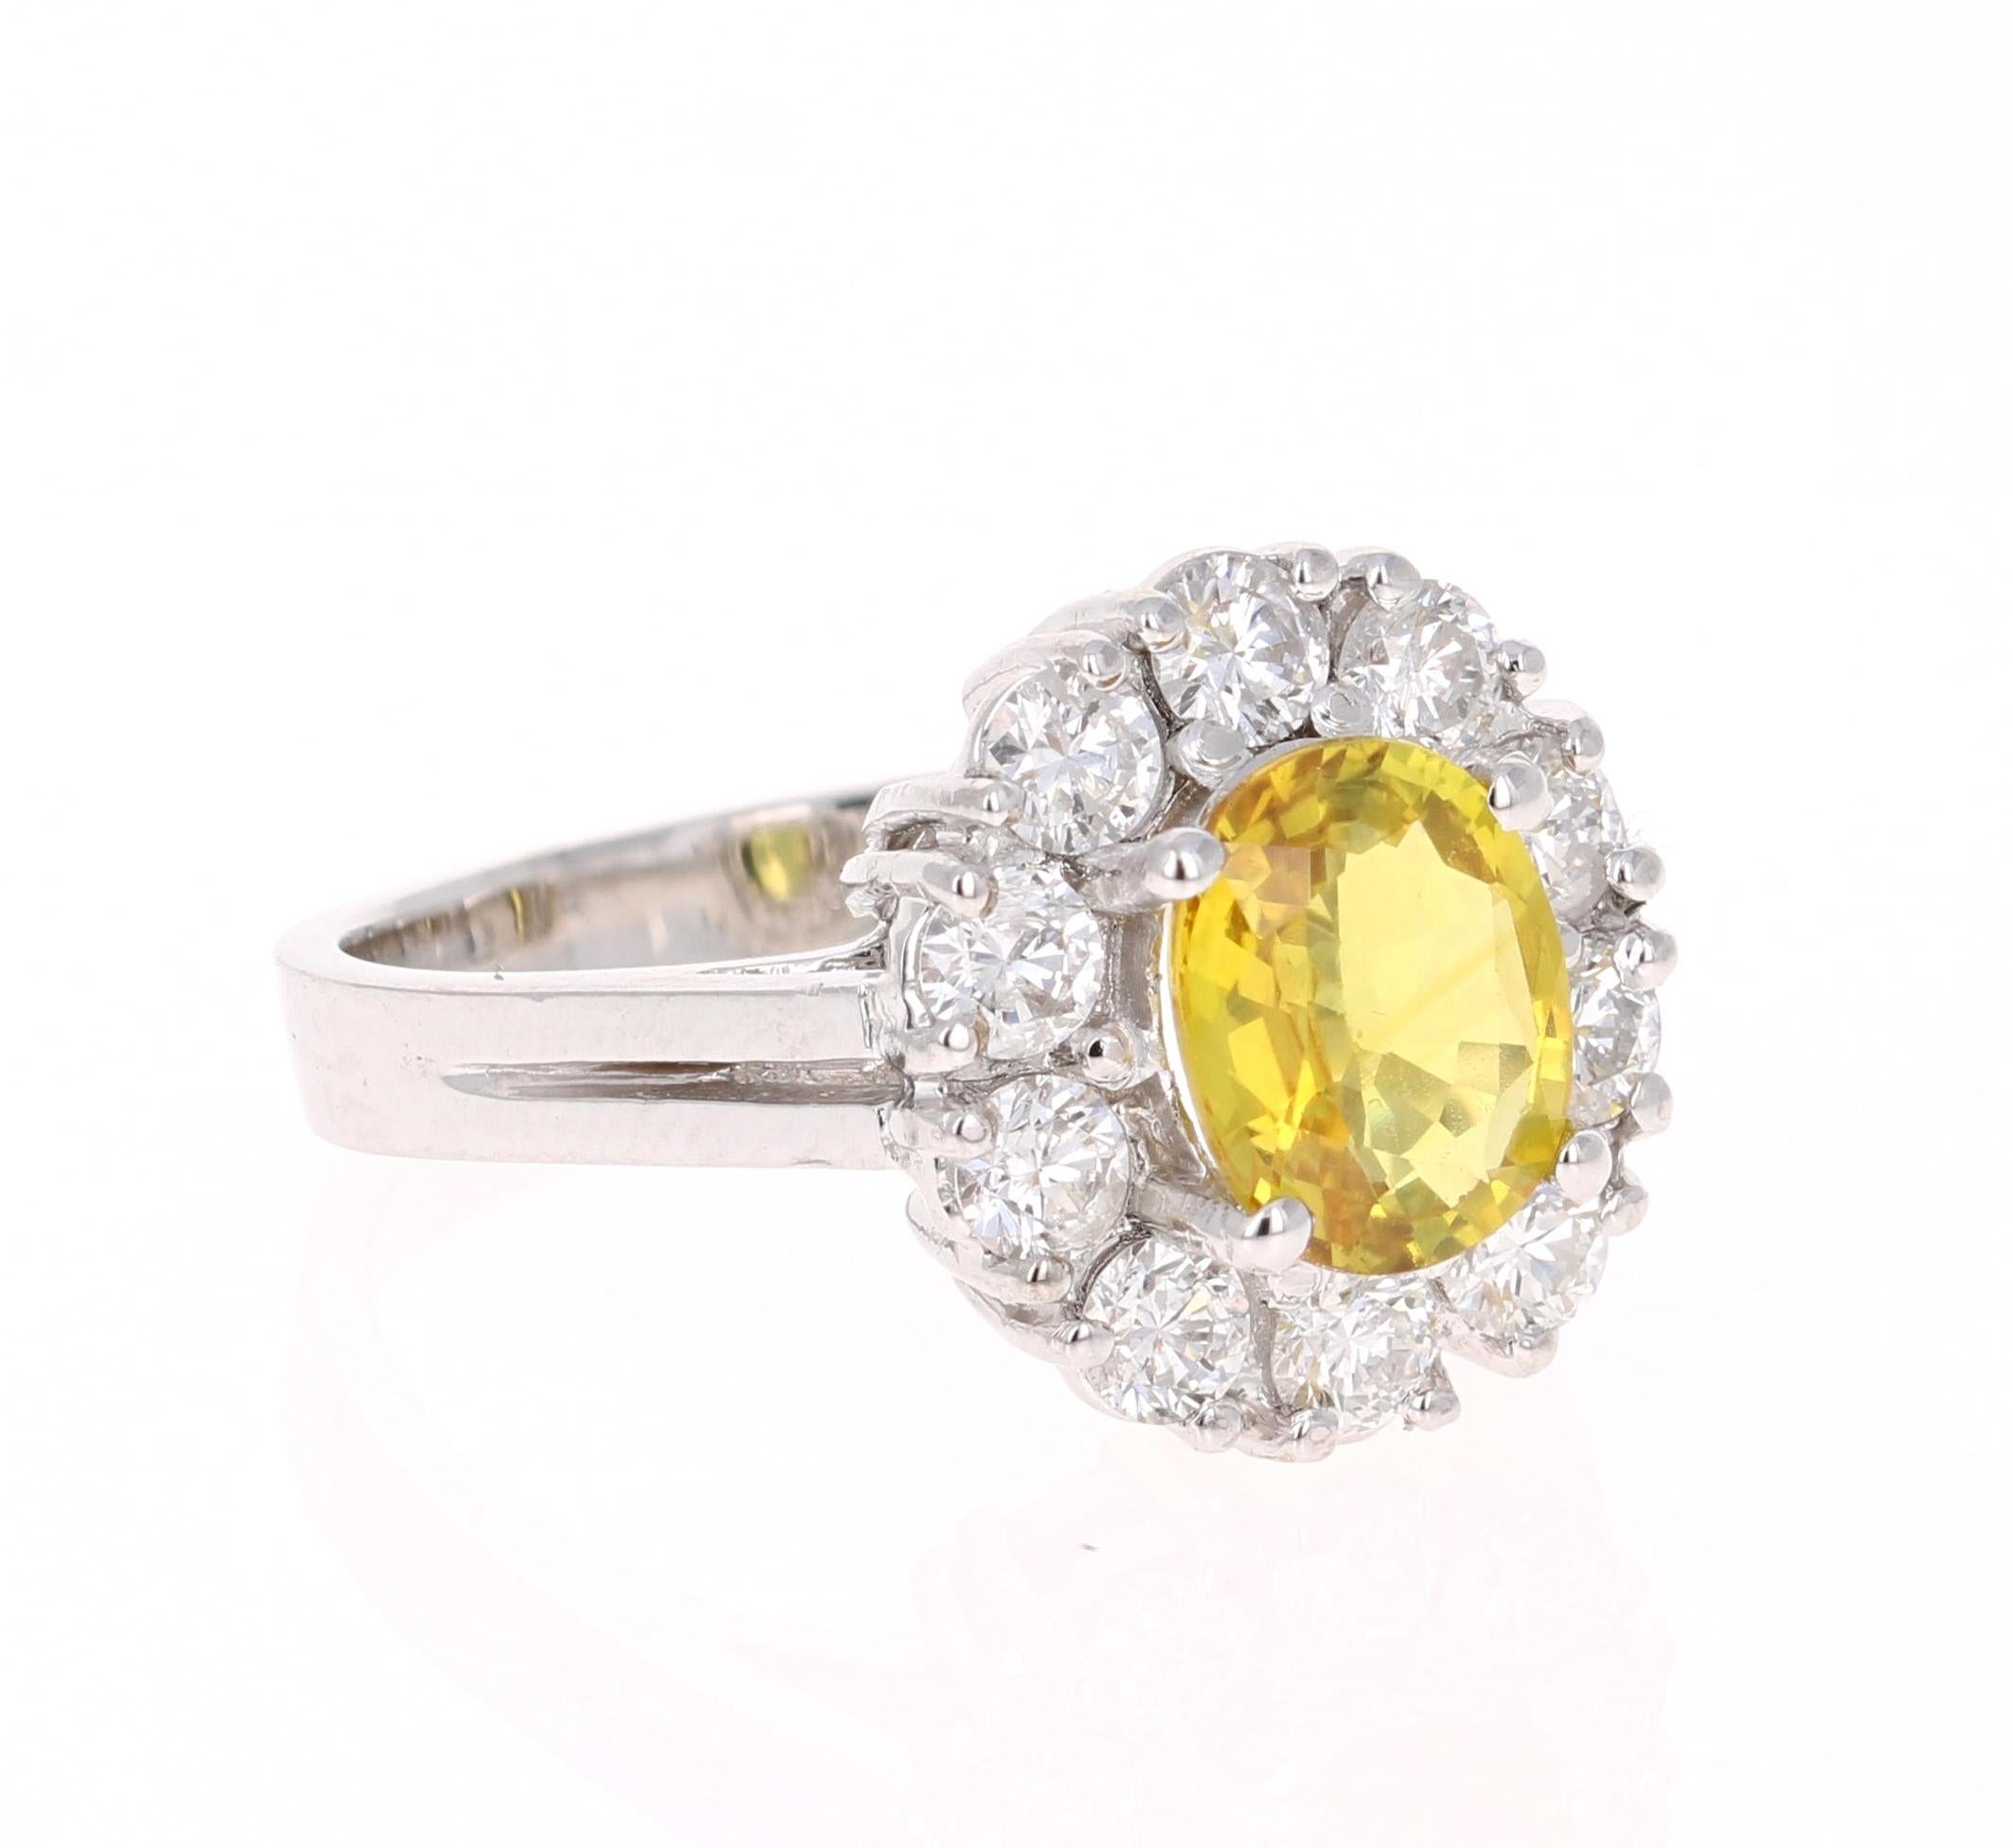 Ein wunderschöner Ring mit einem gelben Saphir in einer klassischen Ballerina-Fassung! Dieser wunderschöne gelbe Saphir ist ein natürlicher Saphir im Ovalschliff mit einem Gewicht von 1,69 Karat. 
Er hat einen Halo aus 10 Diamanten im Rundschliff